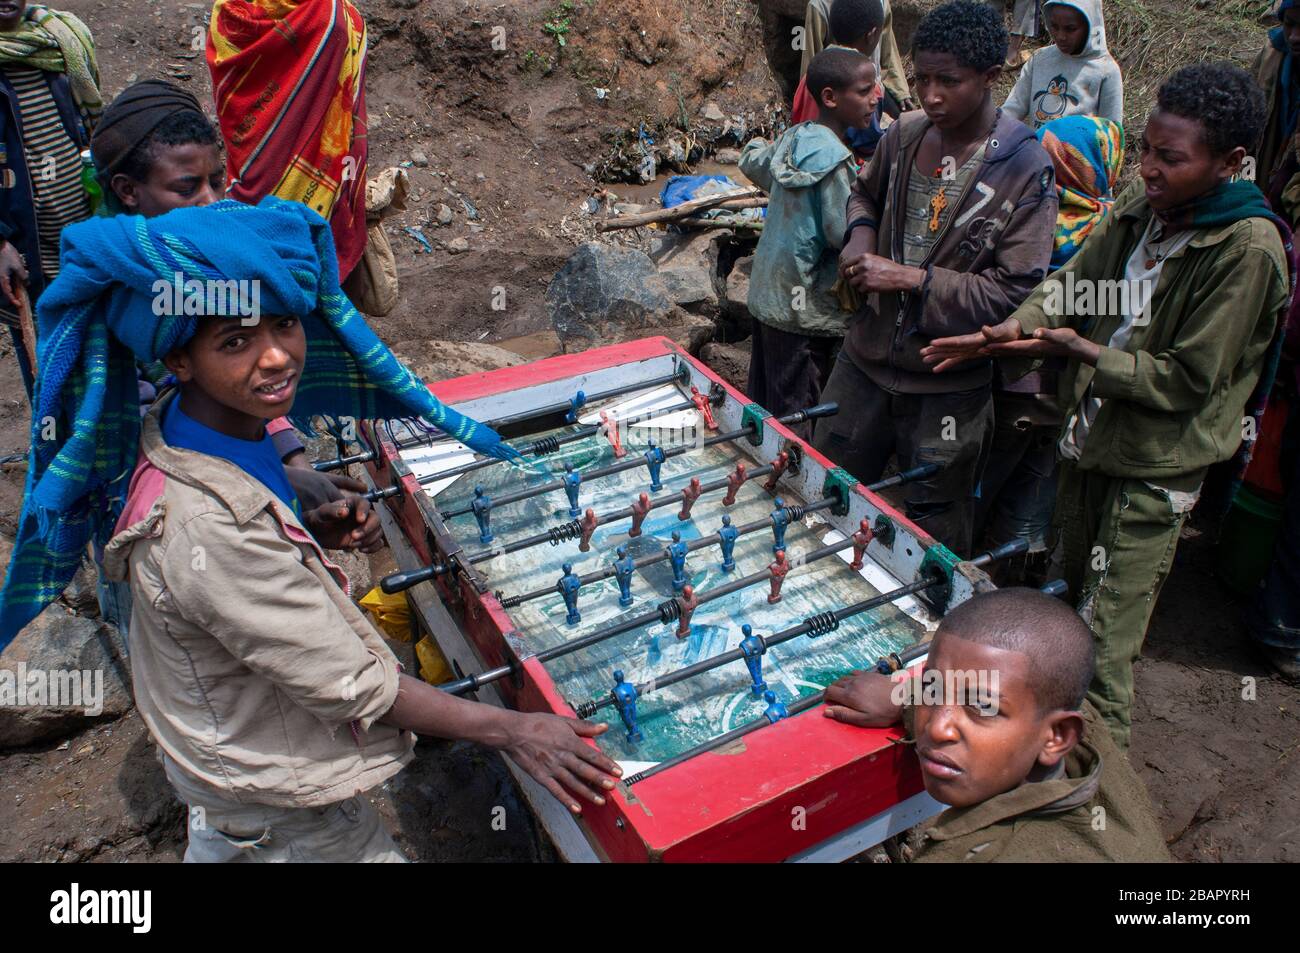 Place du marché. Déchargent. Les montagnes du Simien. Le nord de l'Éthiopie. Marché écorcer. Plusieurs enfants jouer au baby-foot pendant que leurs parents vendent ou achètent. E Banque D'Images